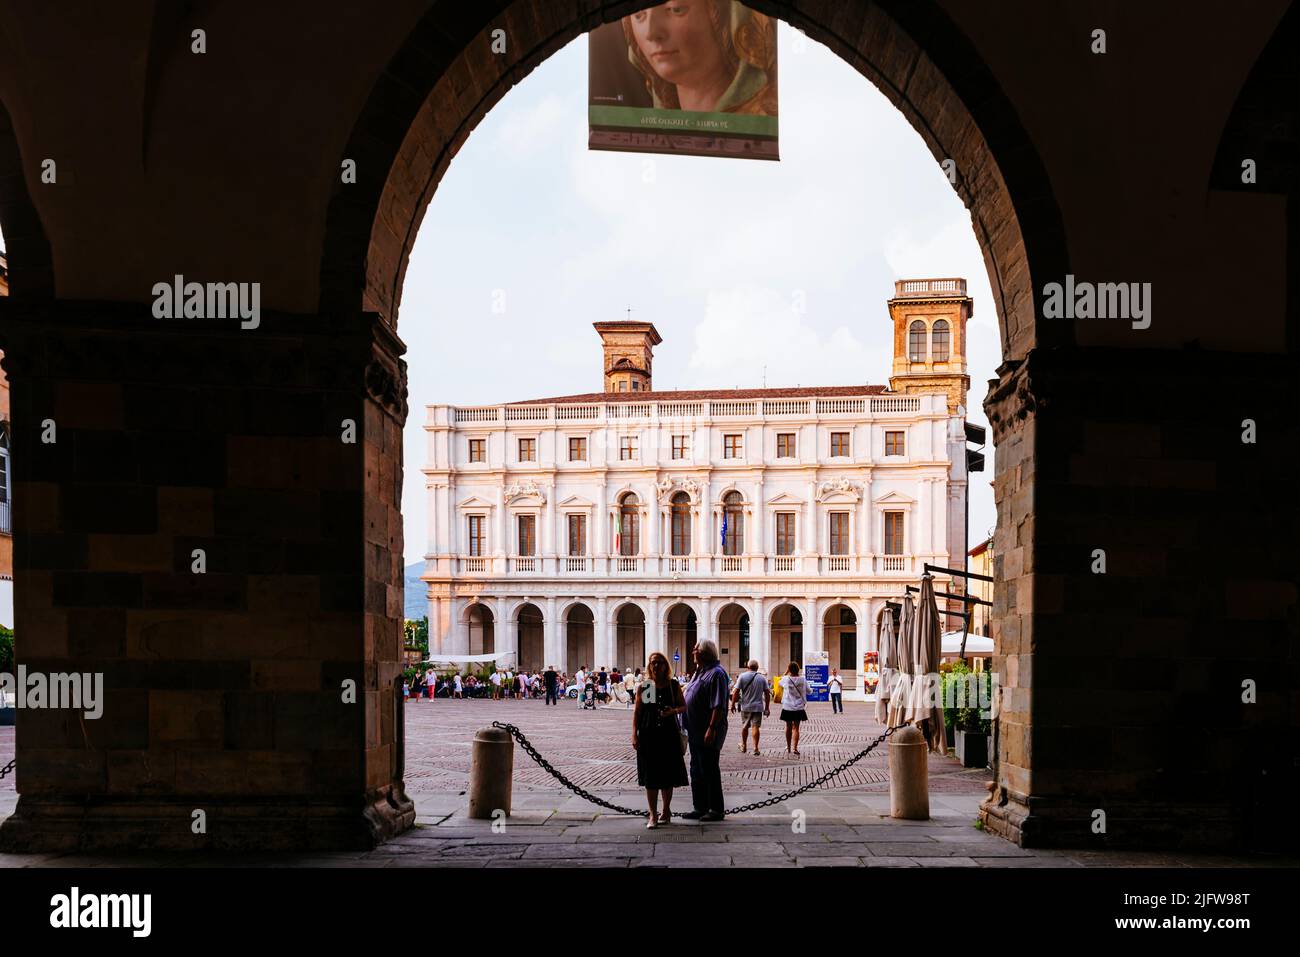 Die Biblioteca civica Angelo Mai durch die Bögen des Erdgeschosses des Palazzo della Ragione gesehen. Piazza Vecchia, Bergamo, Lombardei, Italien, E Stockfoto